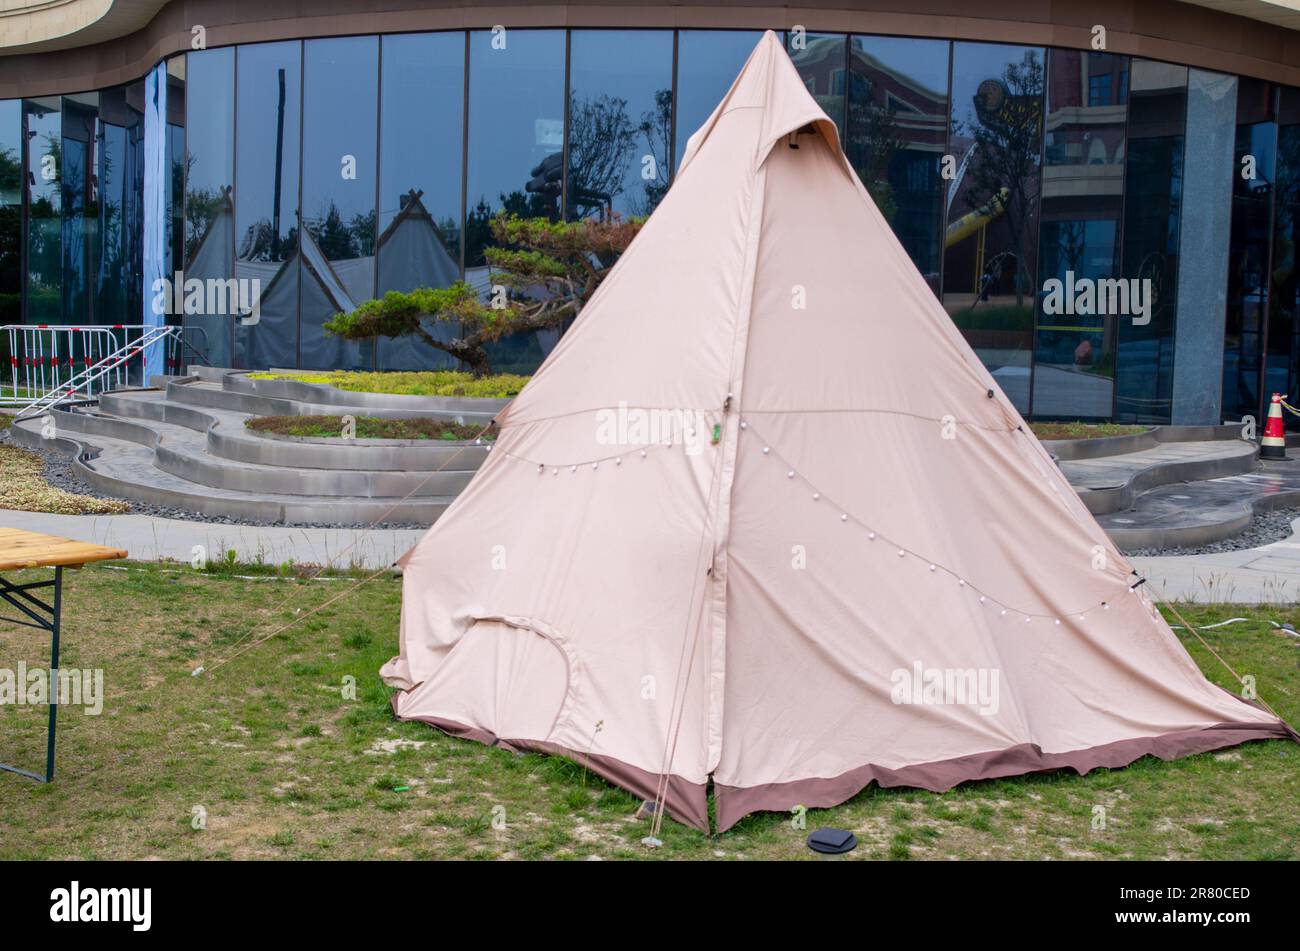 Diverses tentes de champ sur pelouse verte dans la zone de camping au parc Banque D'Images